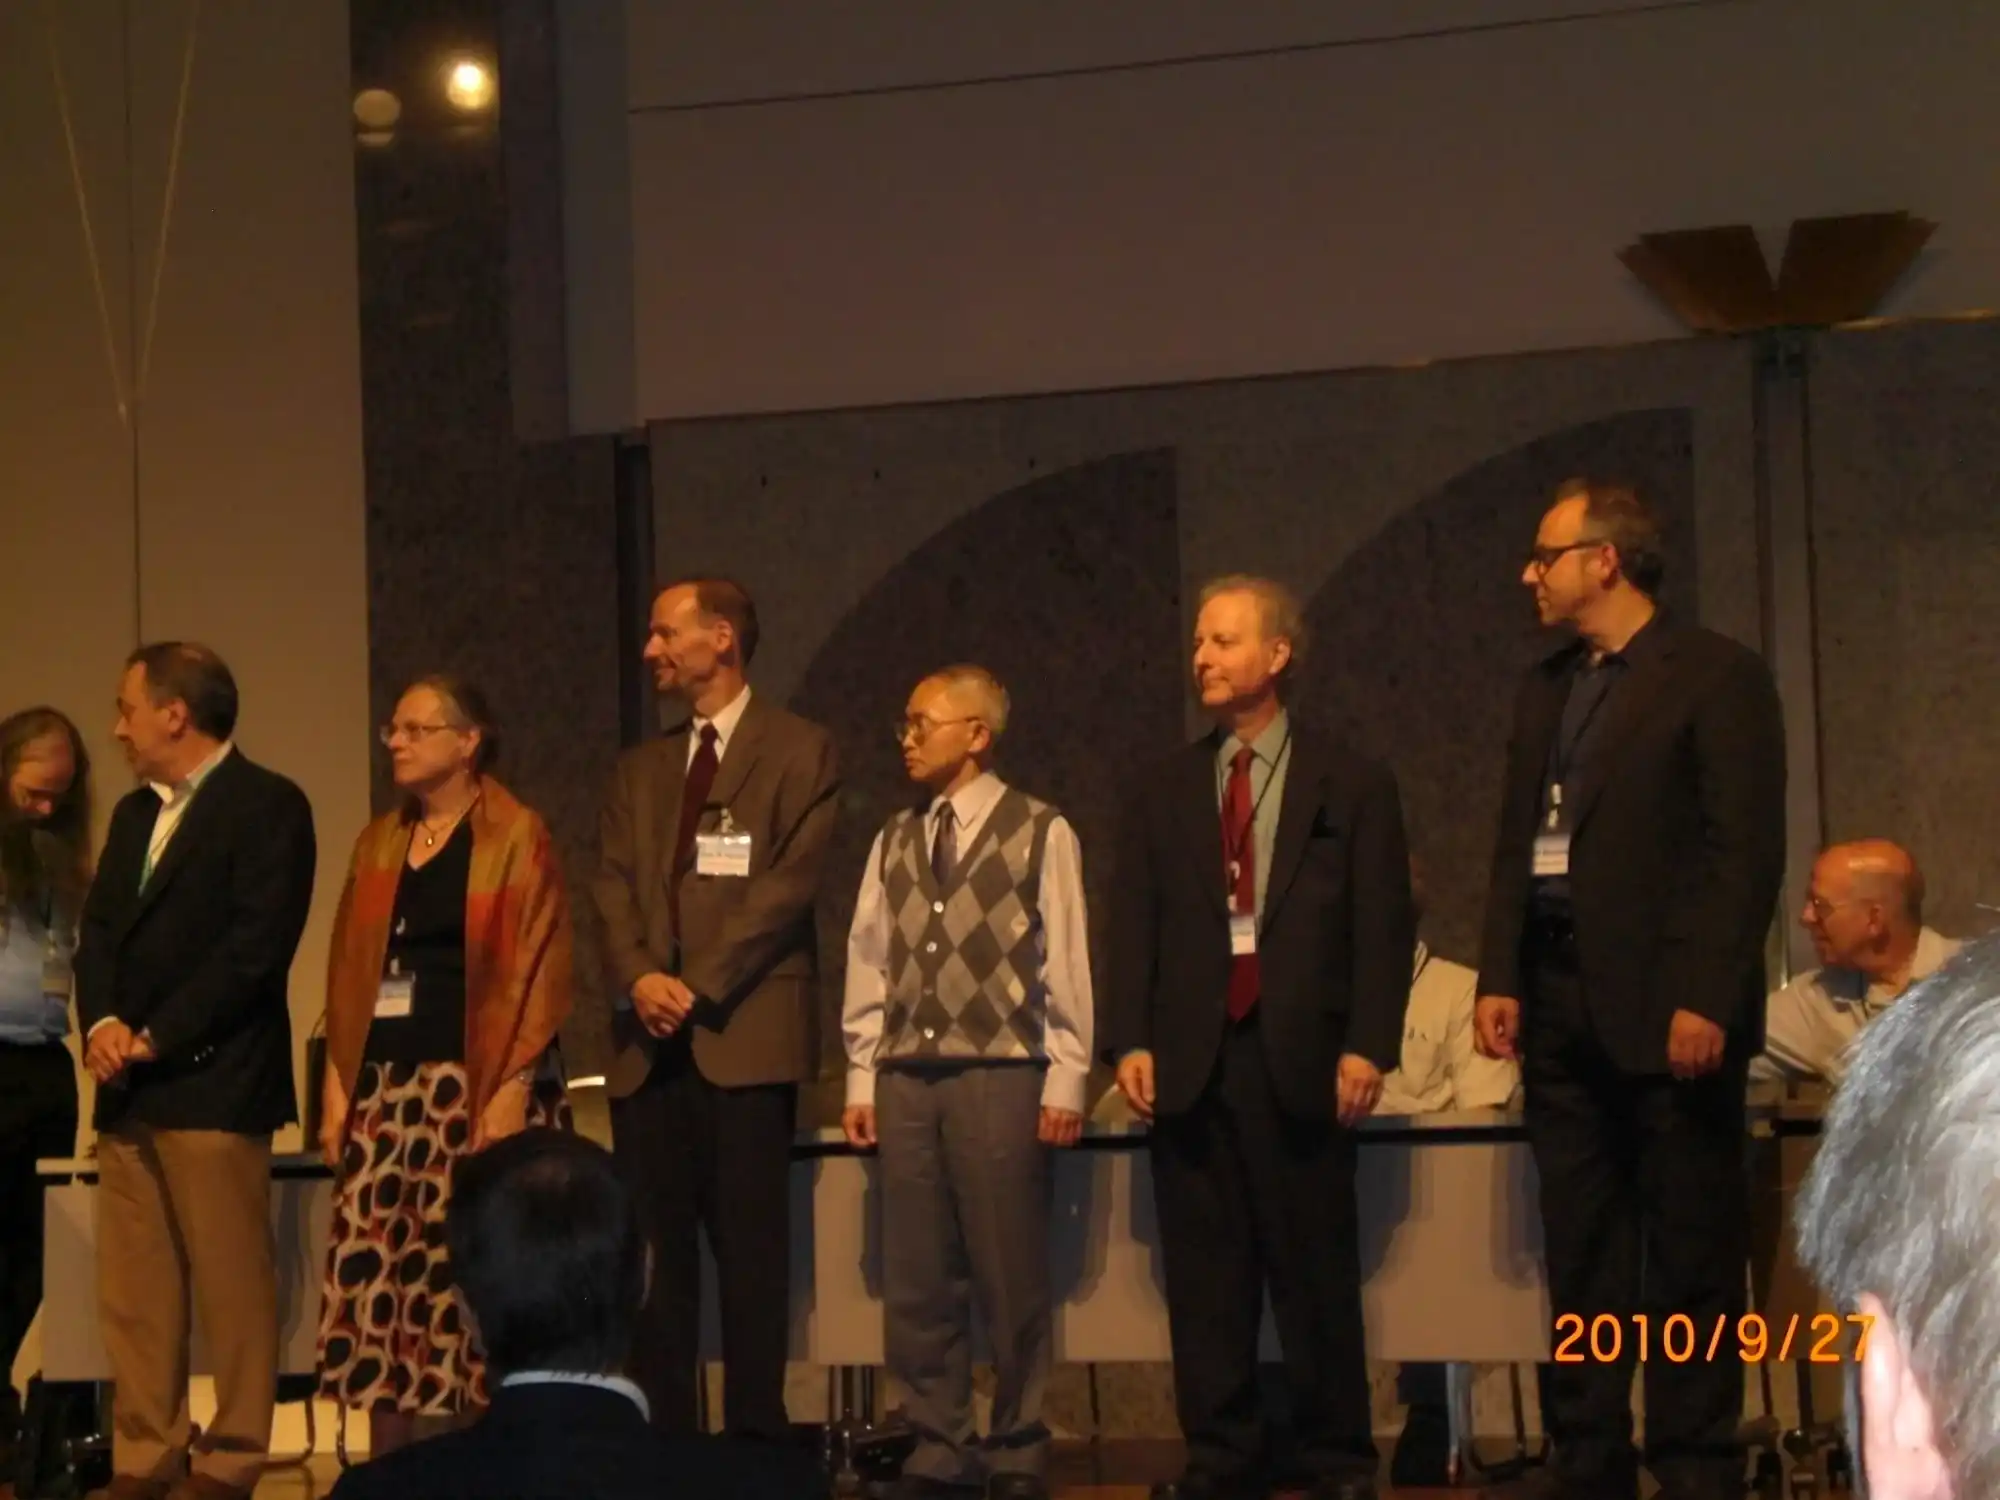 2010獲選第三屆ISCA Fellow，至當時為止全球共24人當選為ISCA Fellow，2010共選上6人。除一位英國人(右一)及李教授外，餘4人均為美國學者。攝於Interspeech 2010(東京)開幕典禮之Fellow頒獎儀式。